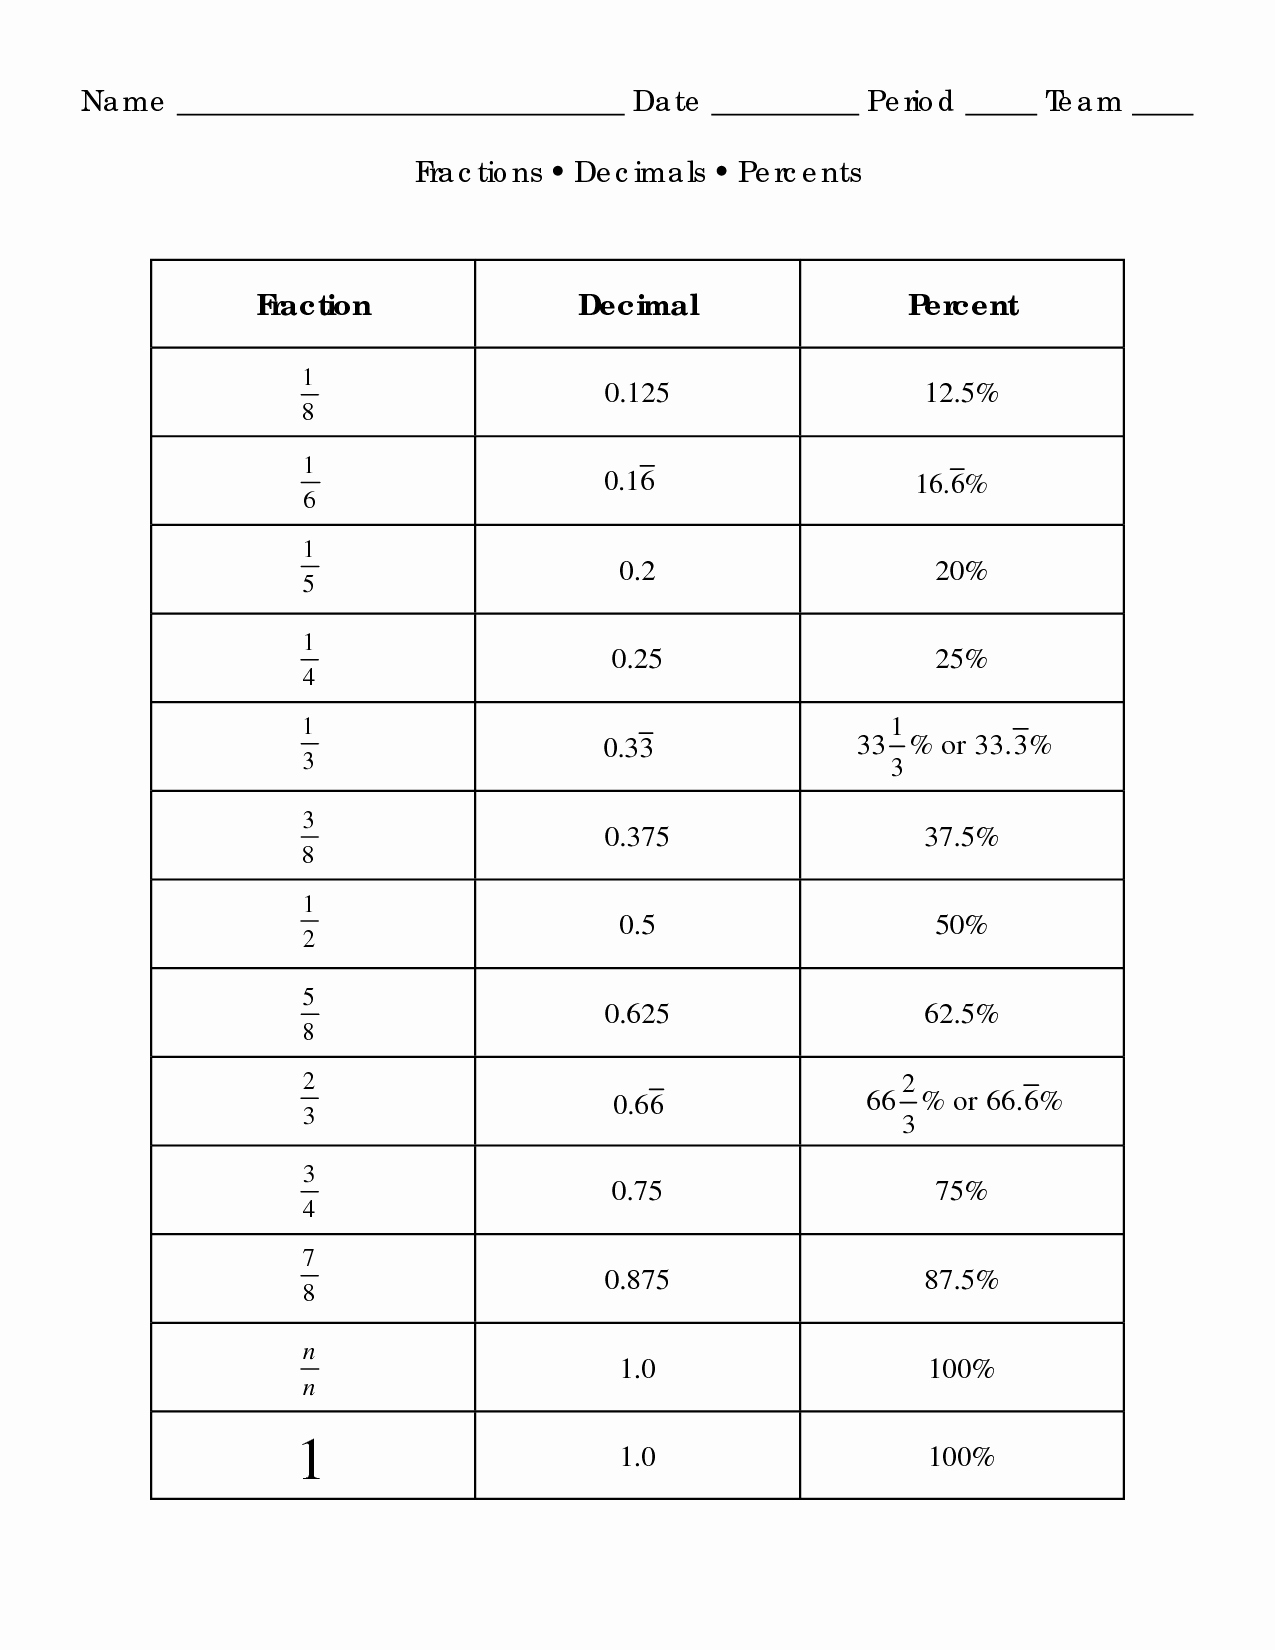 Fraction Decimal Percent Conversion Worksheet Inspirational 12 Best Of Printable Fraction Decimal Percent